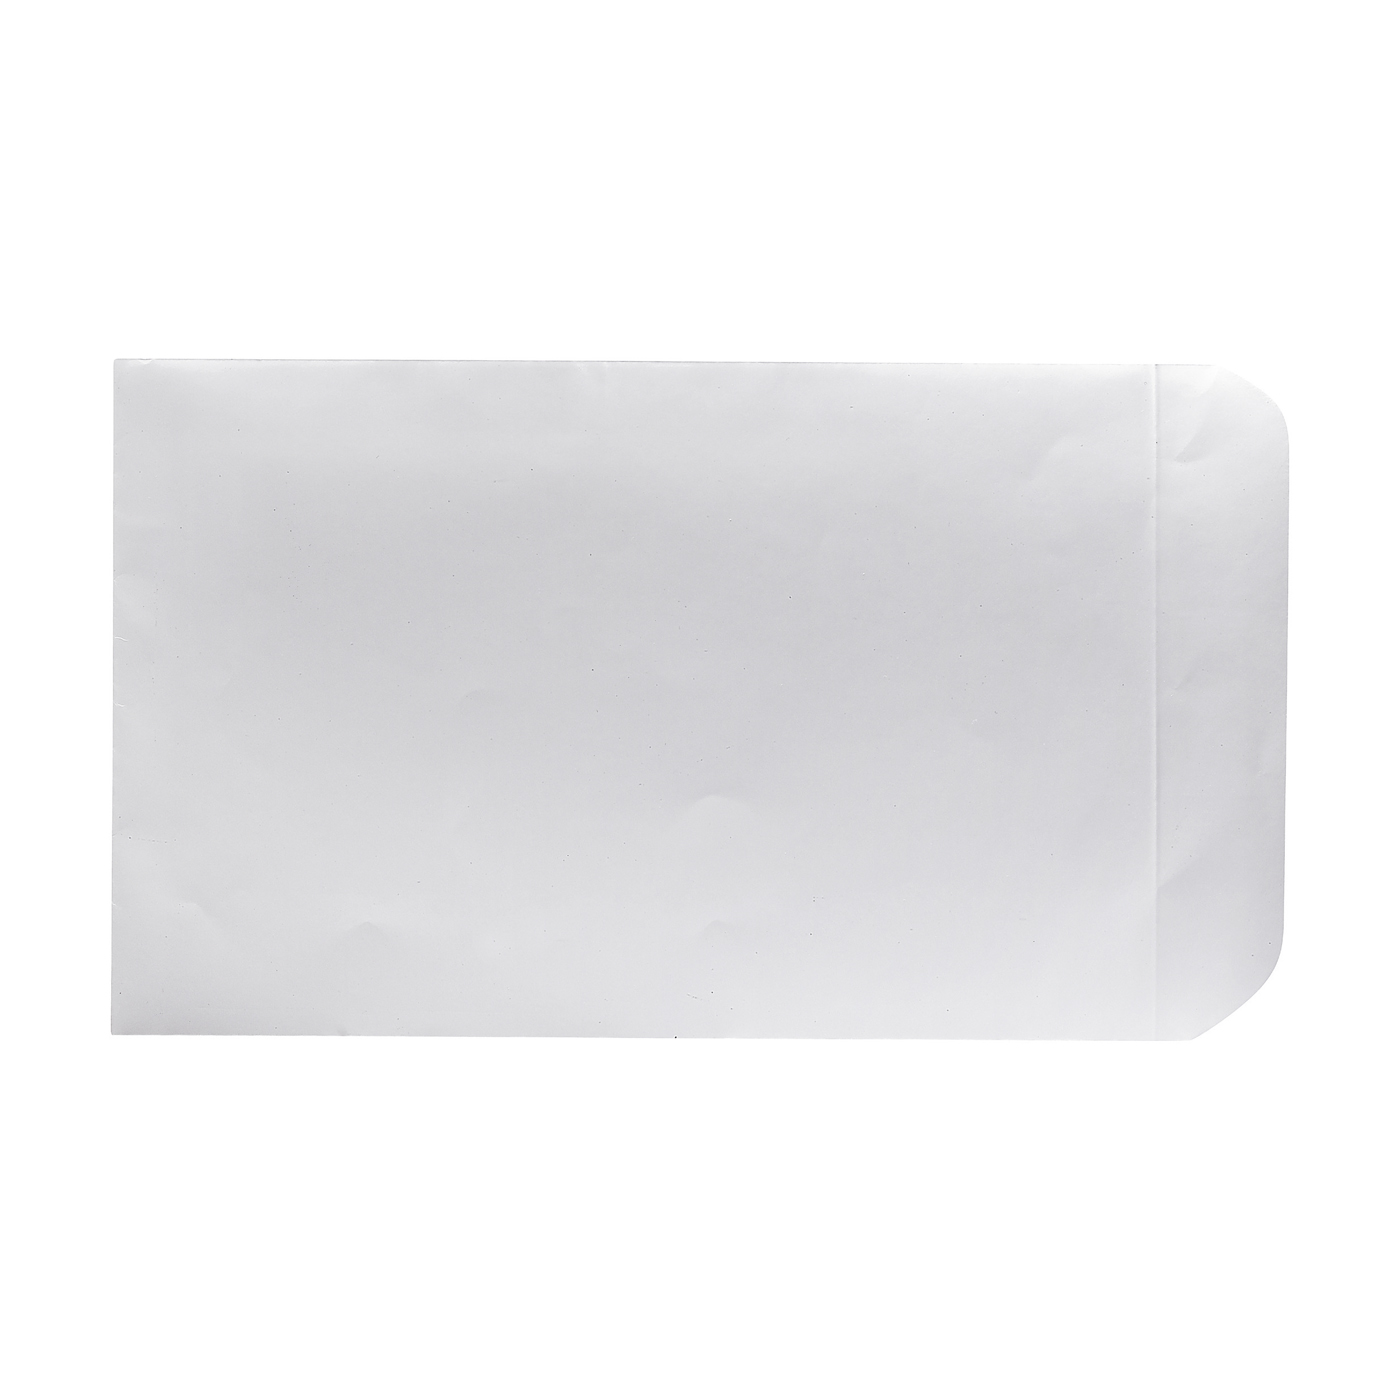 Papierbeutel, weiß, 125 x 192 mm - 10 Stück